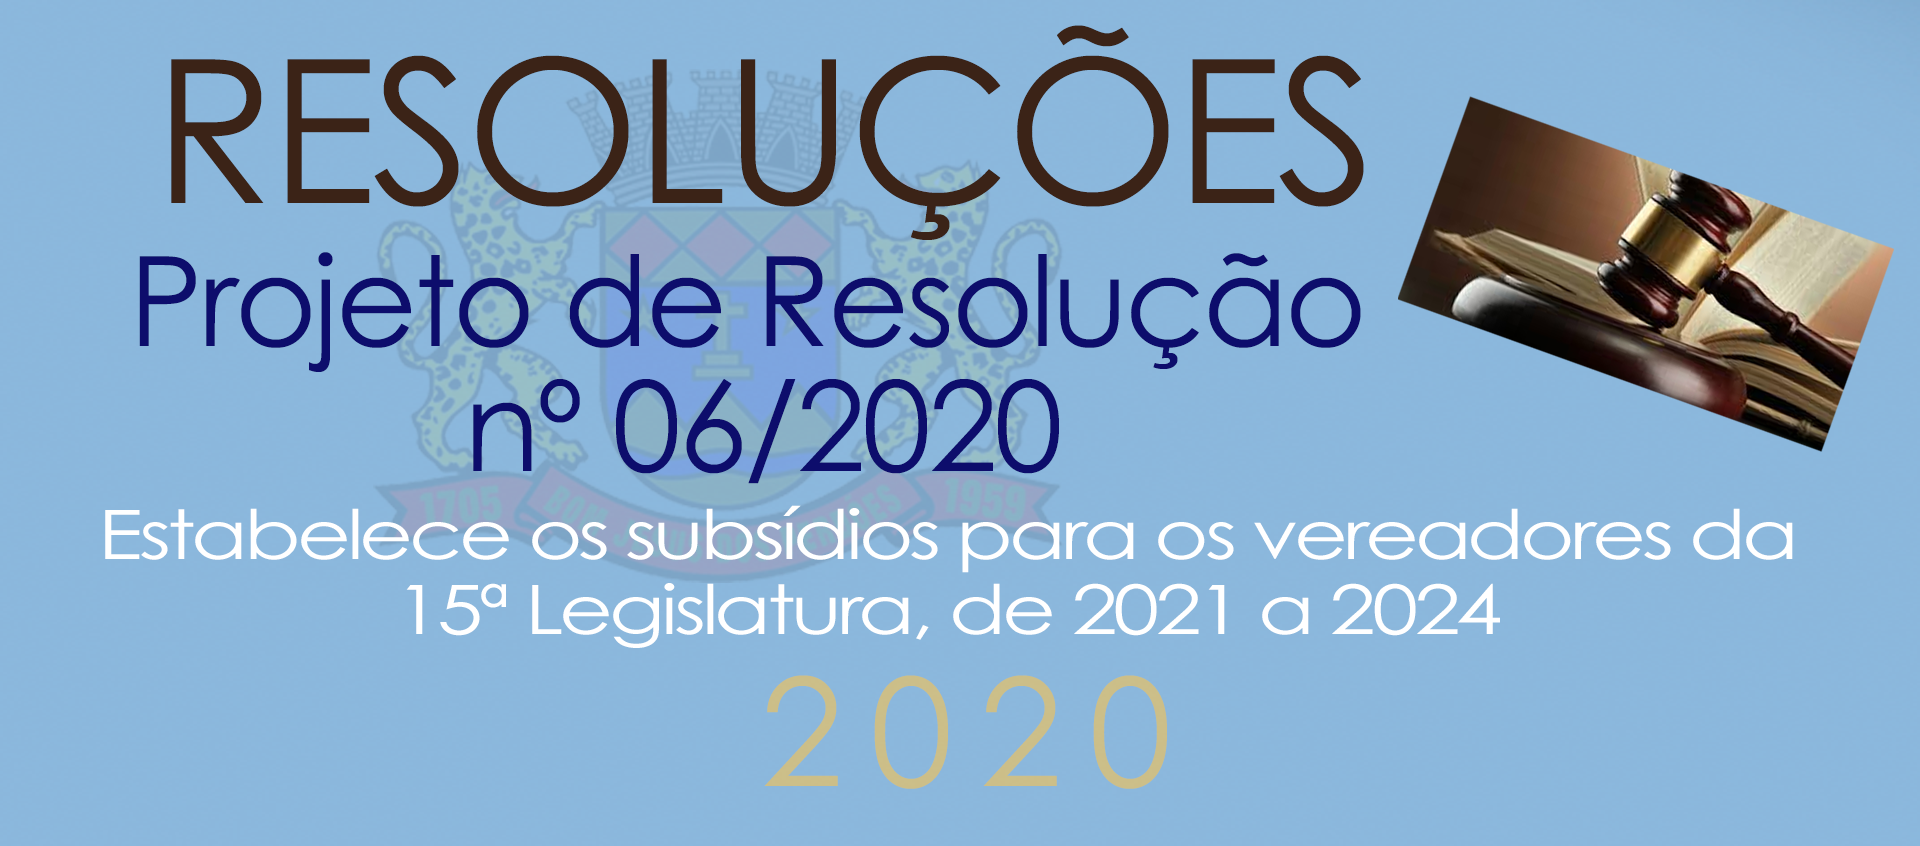 PR nº 06/2020